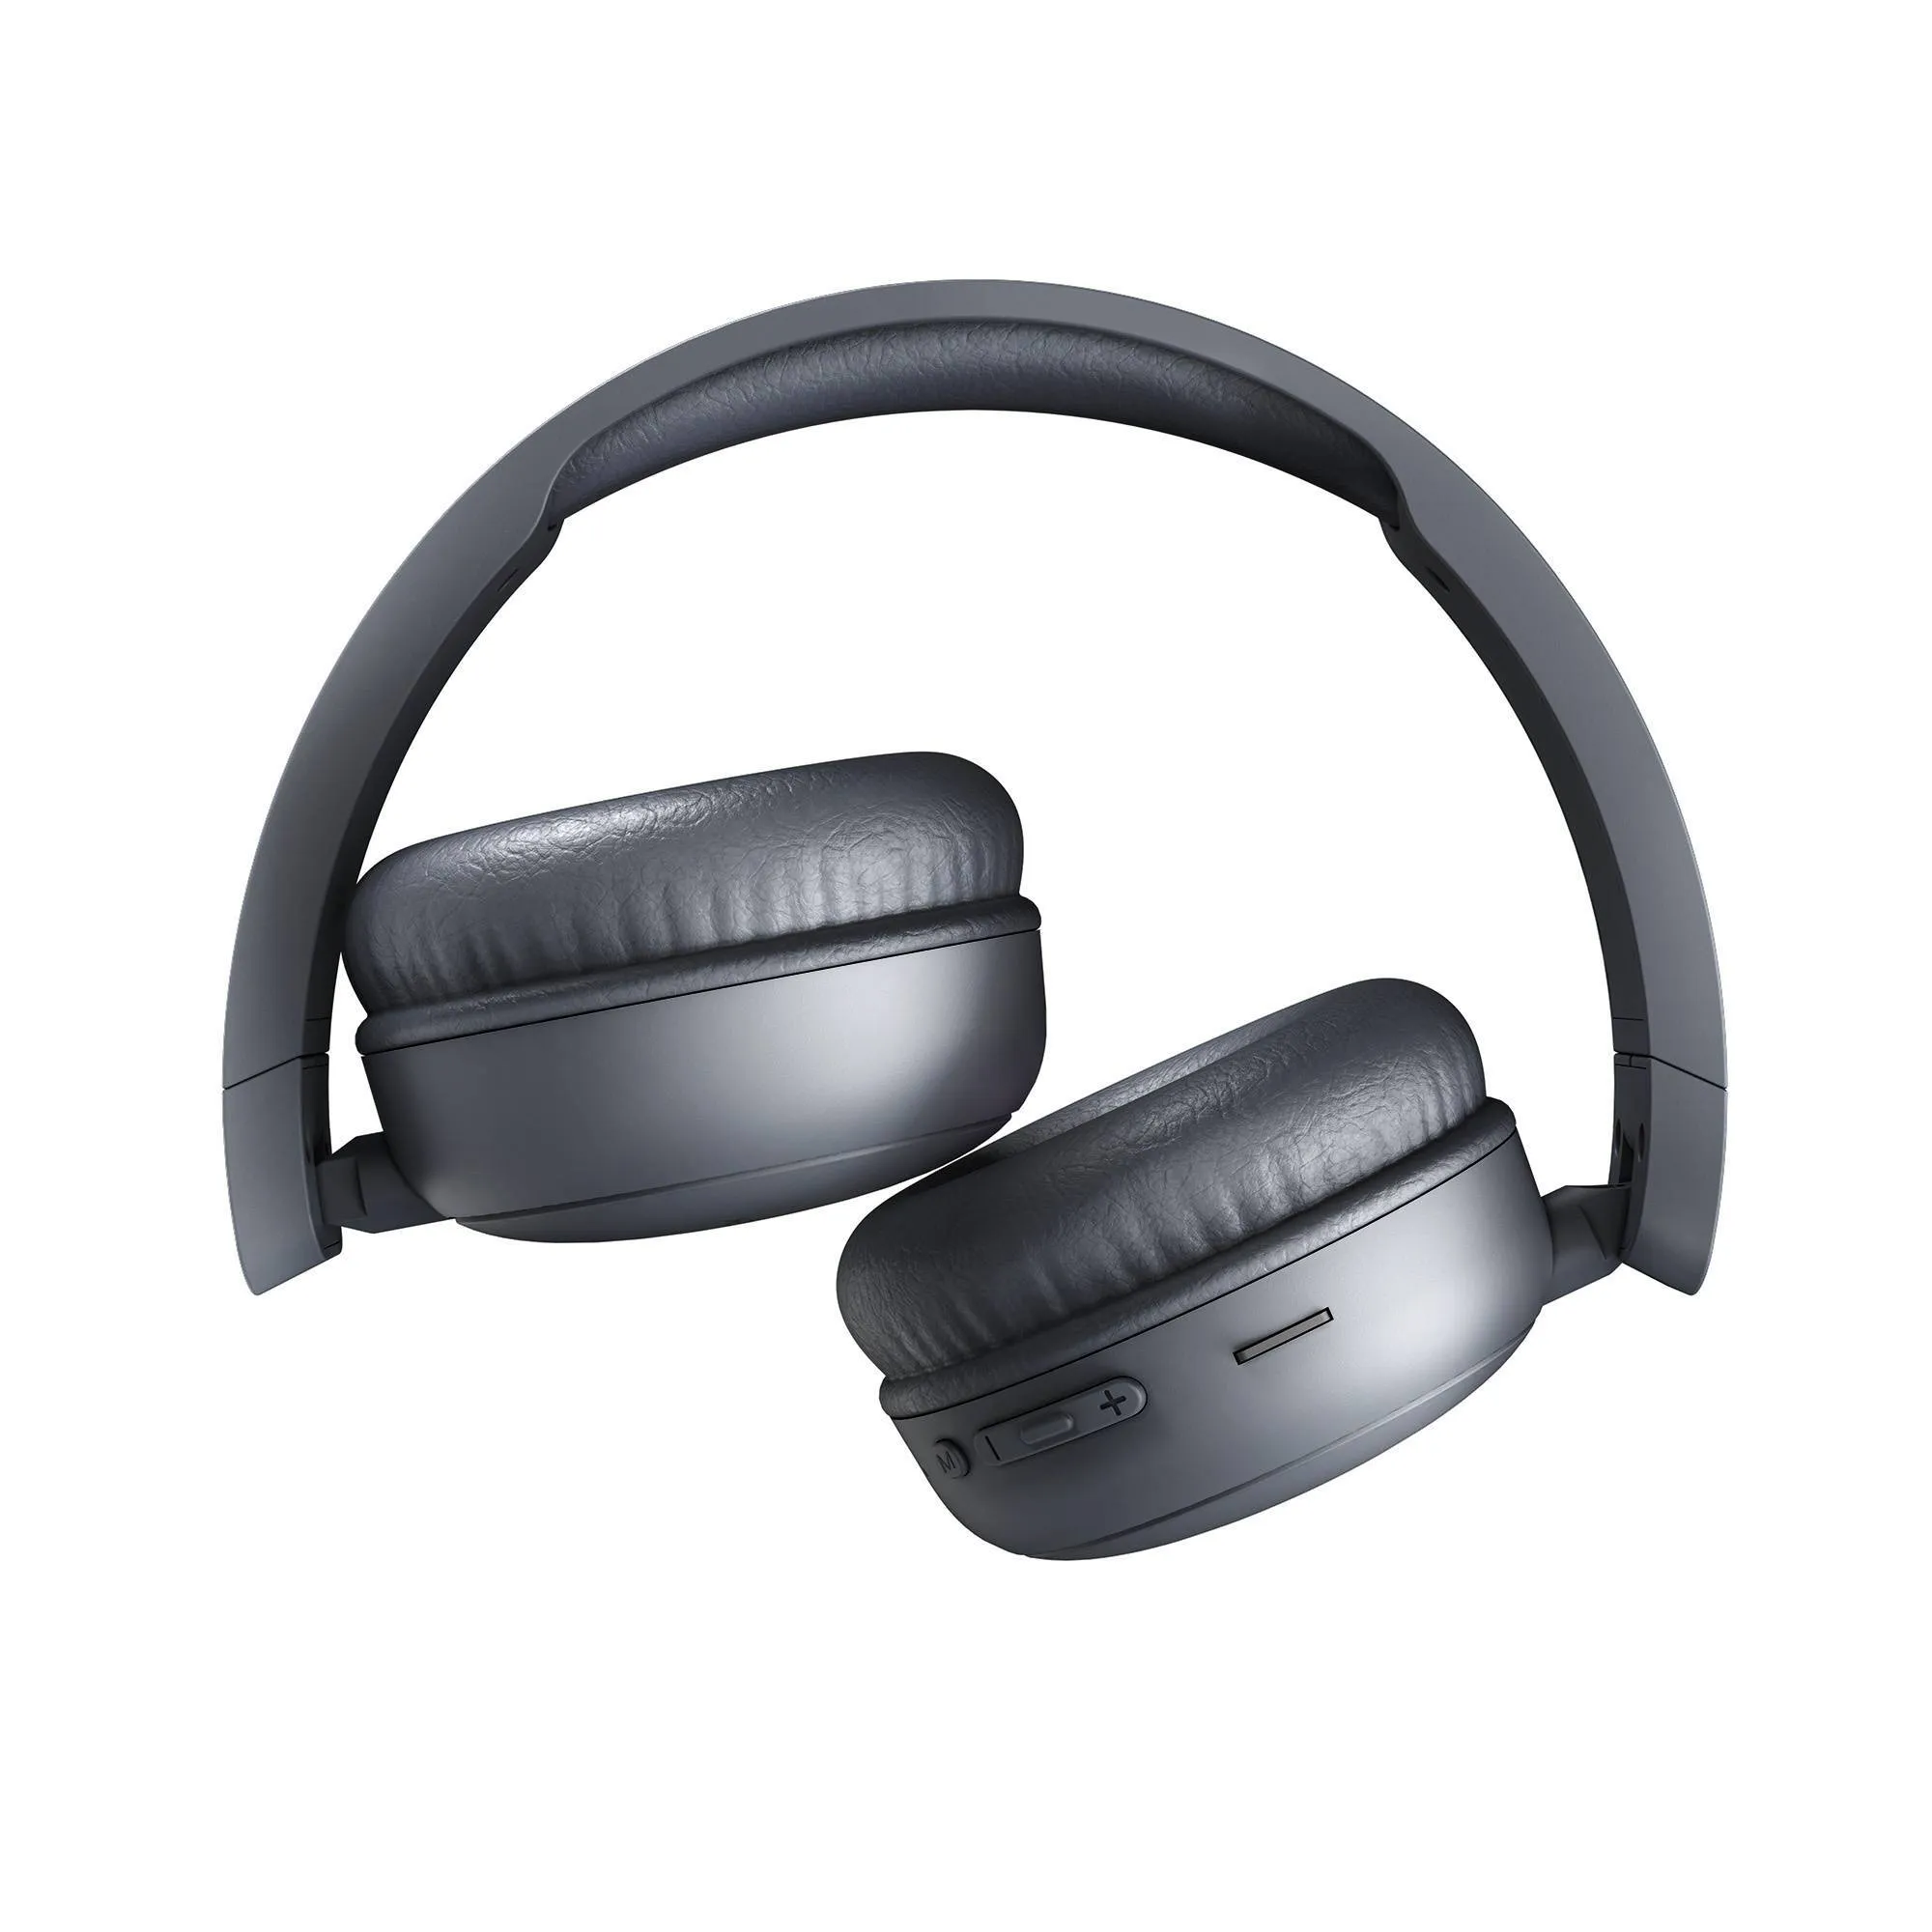 Ausziehbare HeadTurner-Kopfhörer mit Klappmechanismus für mehr Komfort.